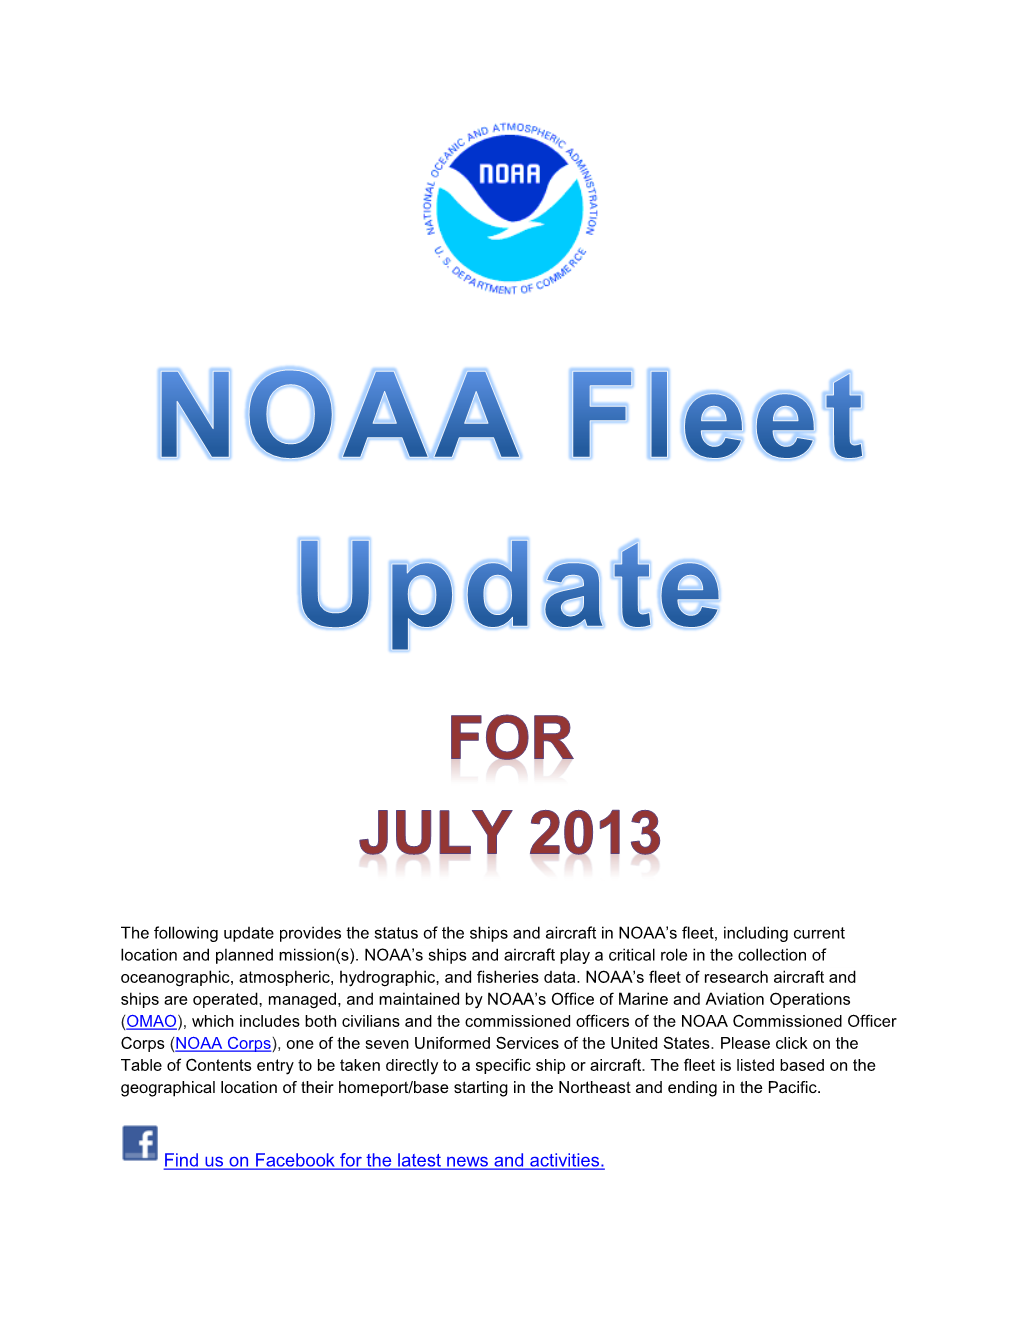 NOAA Fleet Update